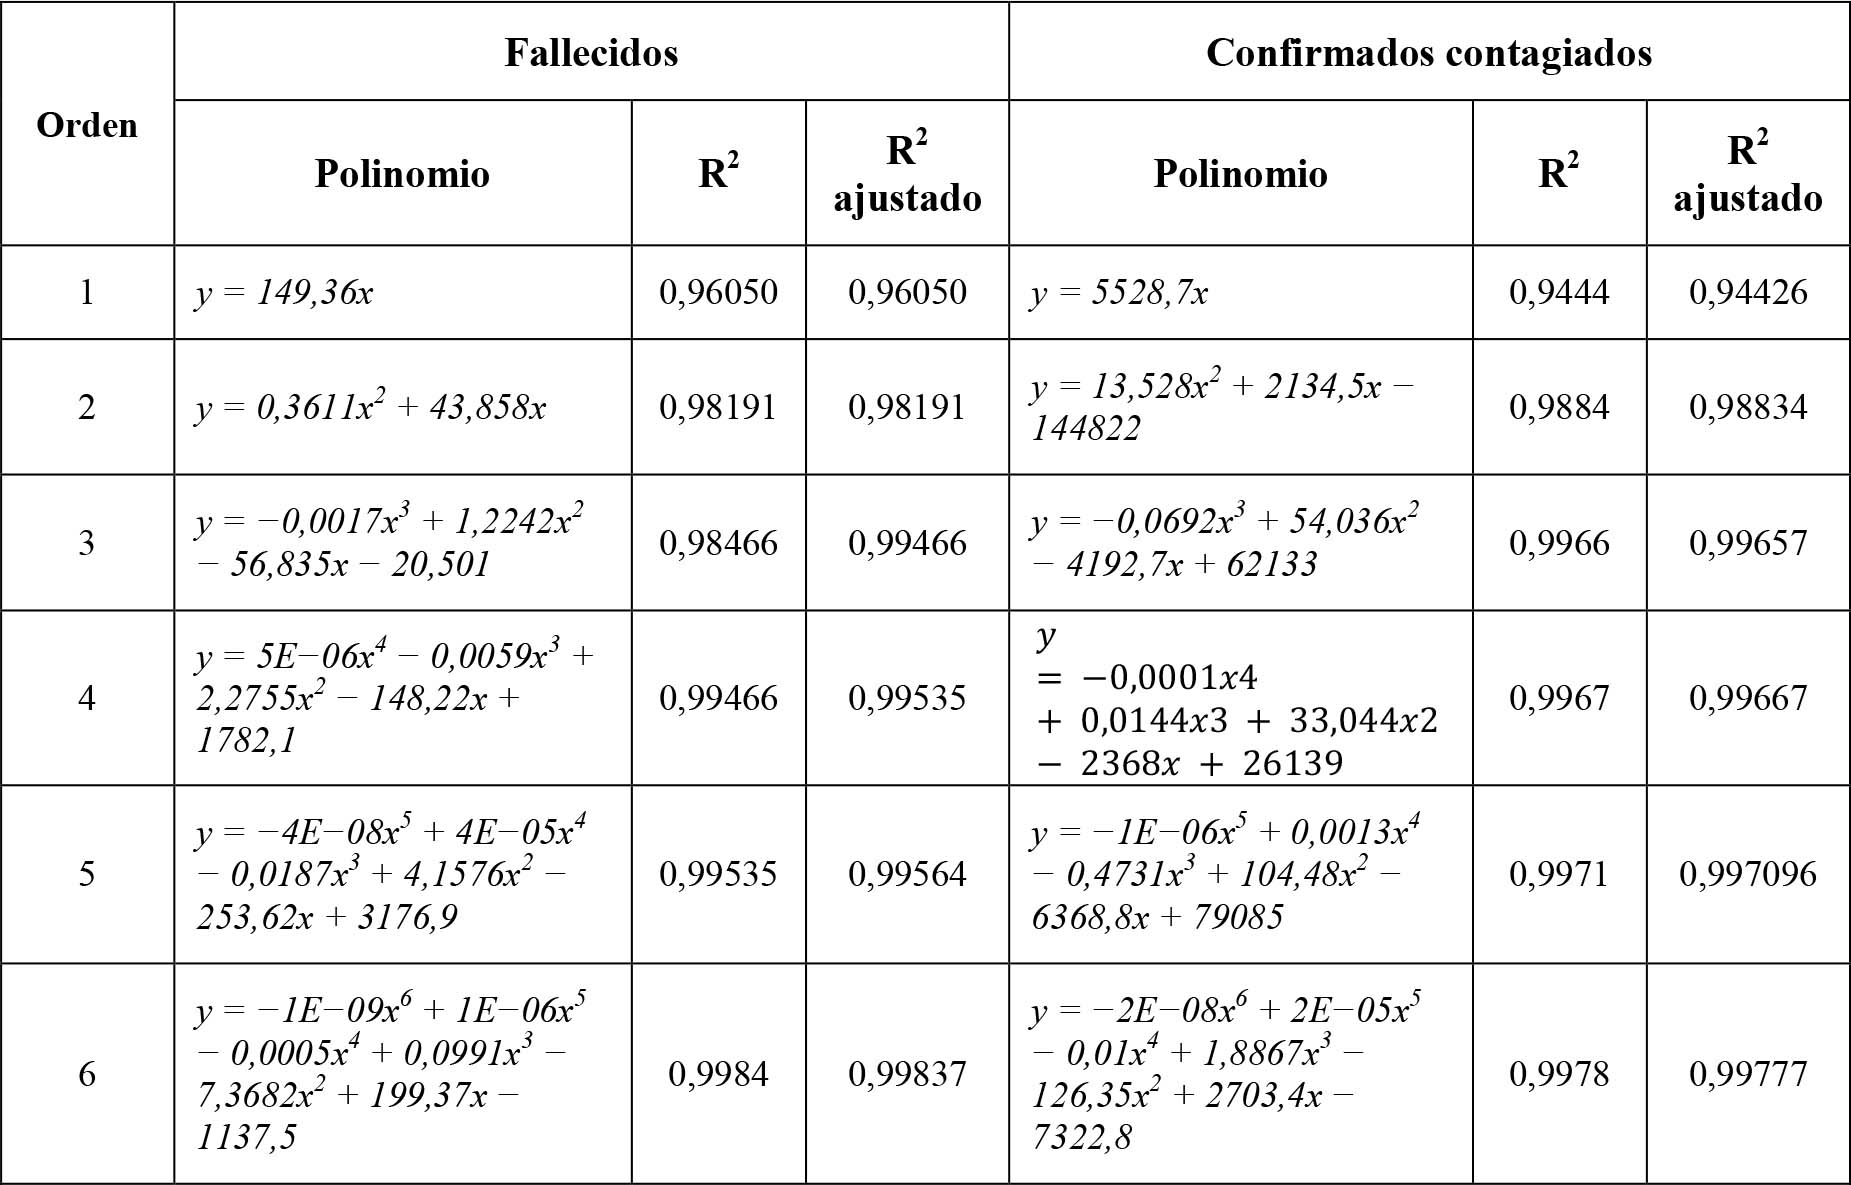 Polinomios para fallecidos y confirmados contagiados acumulados (desde 06 de marzo de 2020 a 10 de abril de 2021)